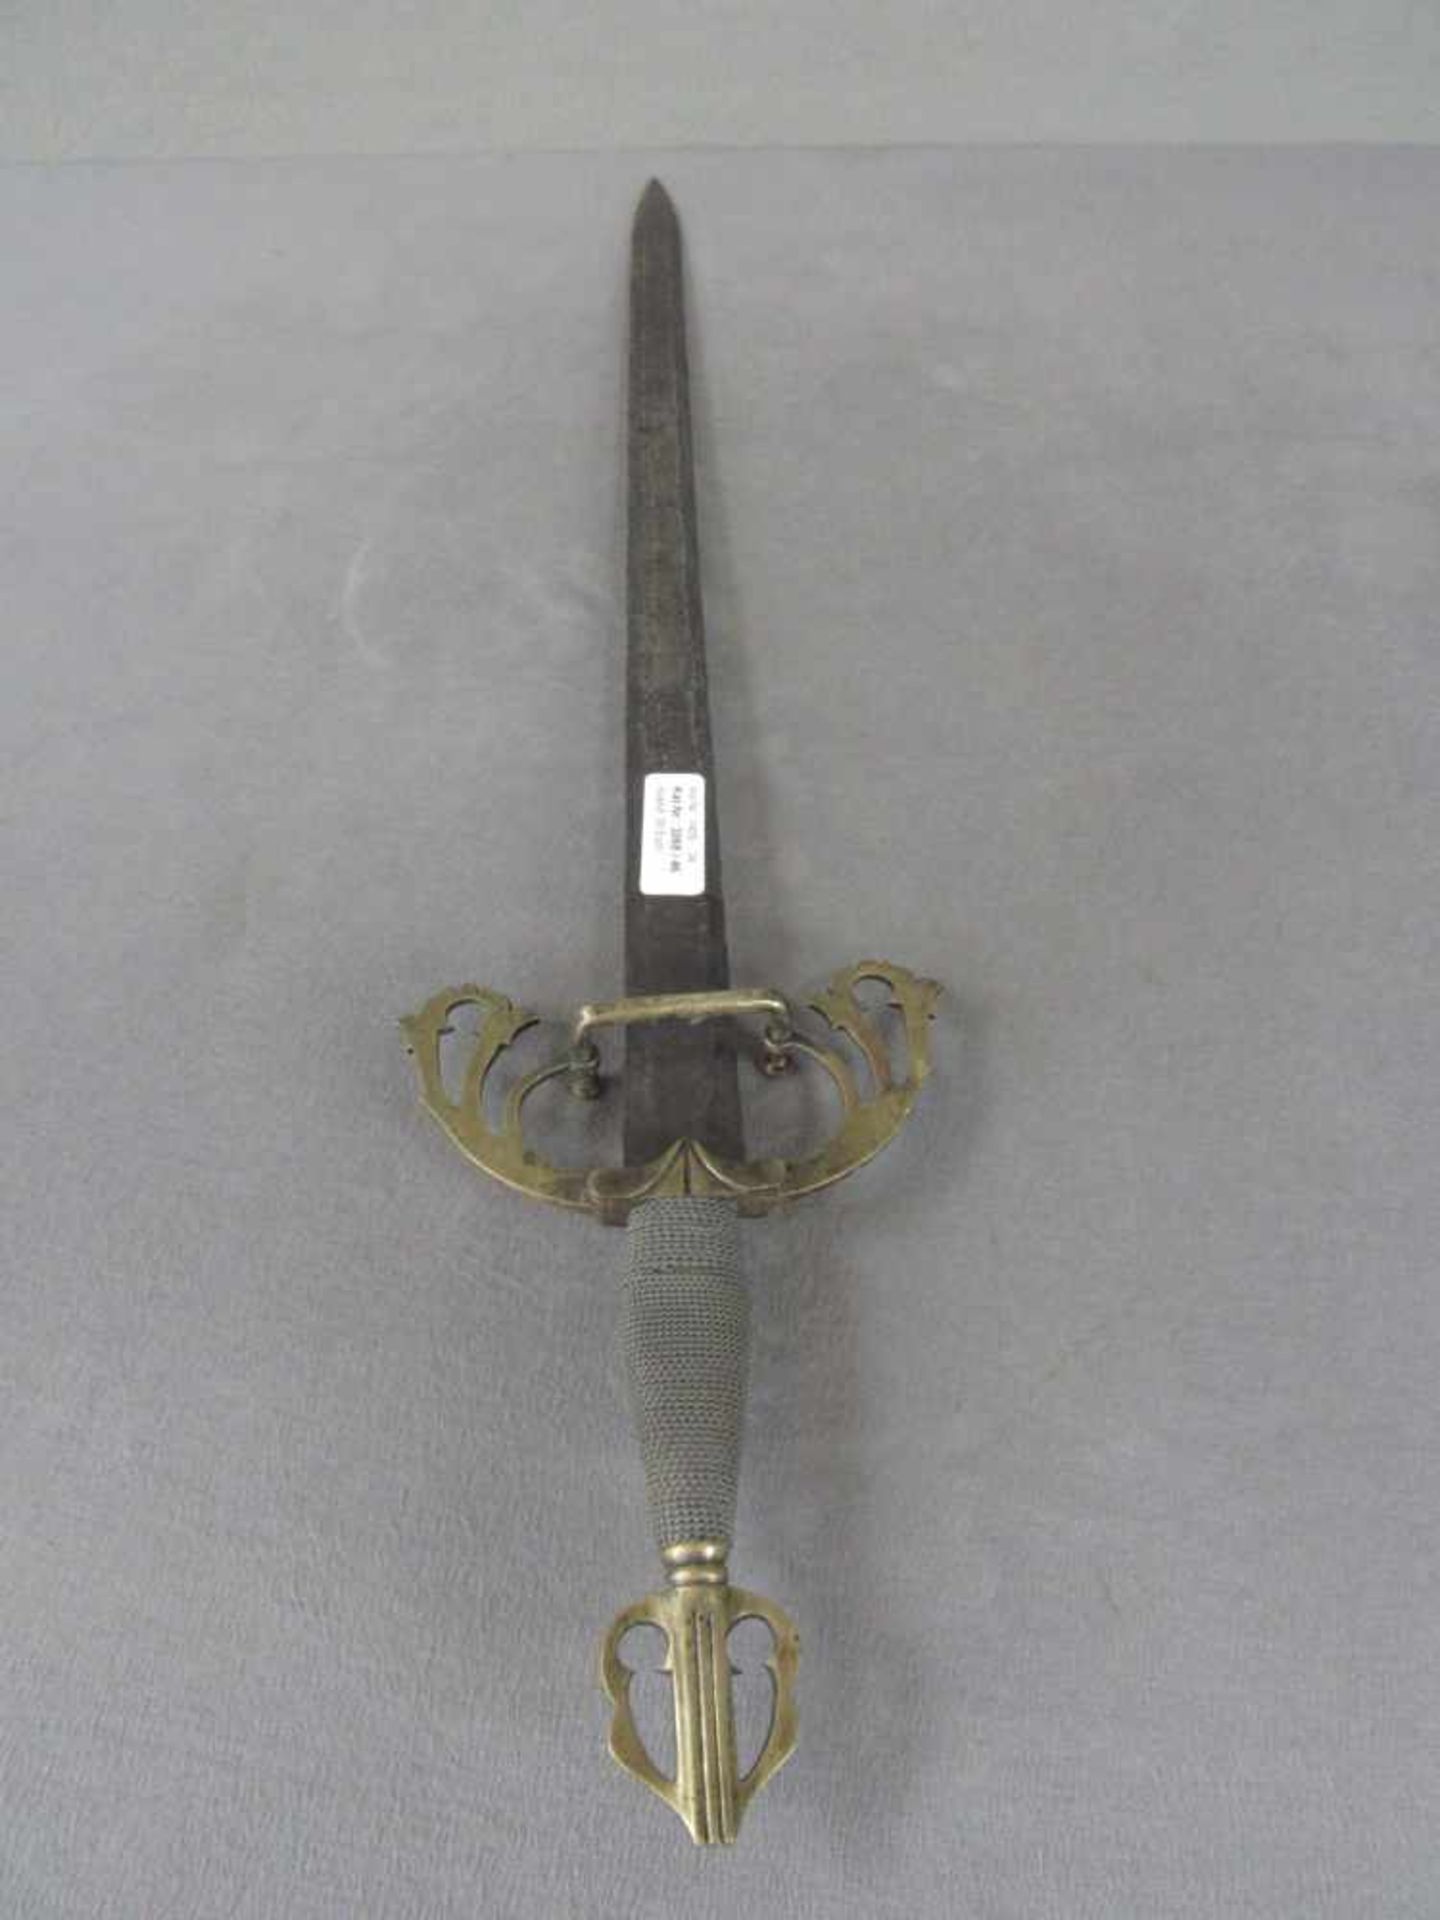 Asiatisches Schwert leicht rostnarbig 73cm lang